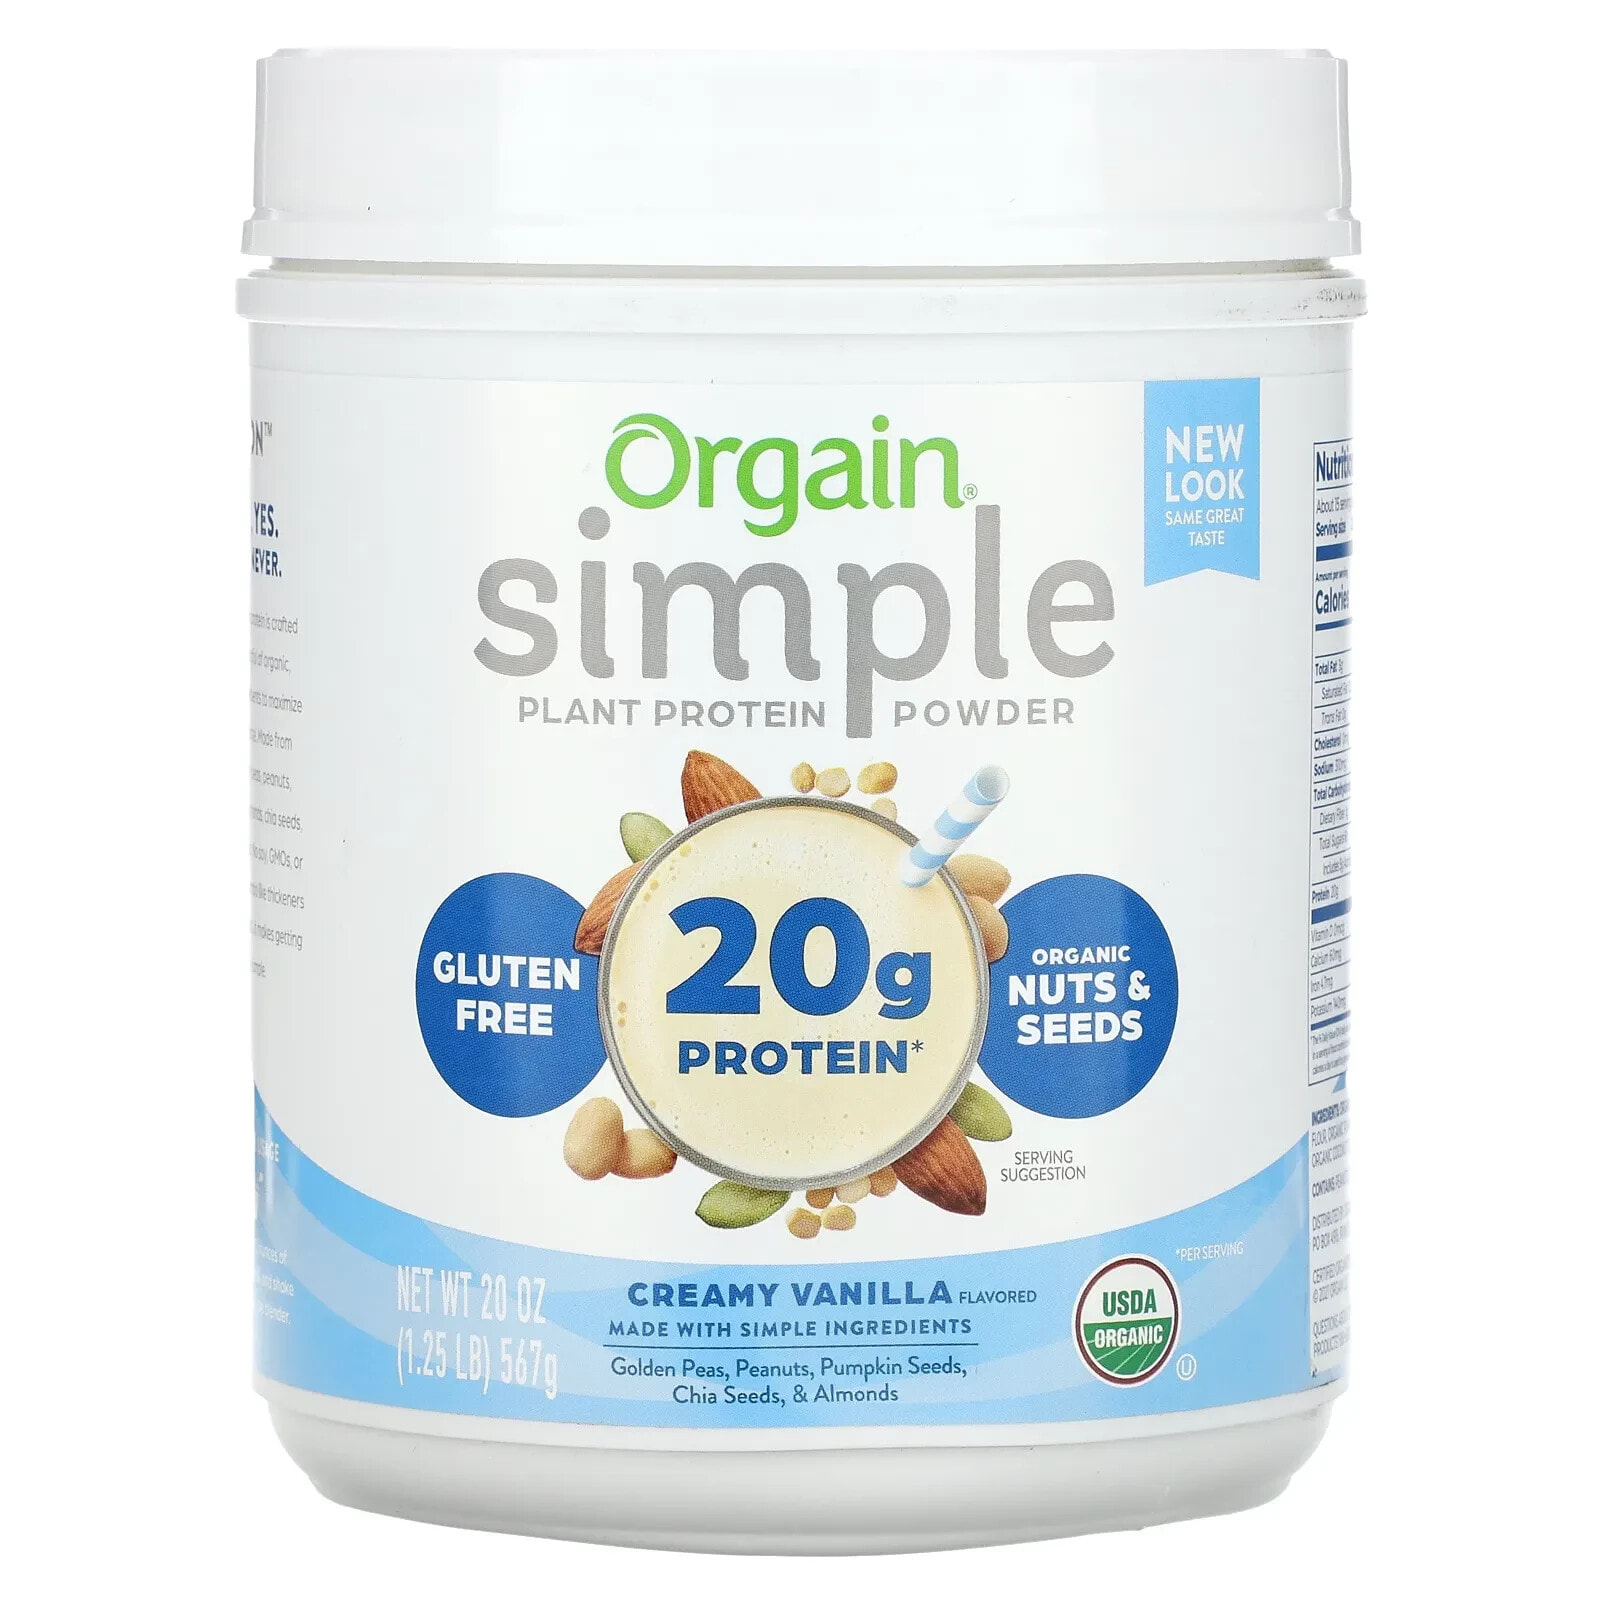 Orgain, Simple, органический растительный протеиновый порошок, арахисовая паста, 567 г (1,25 фунта)